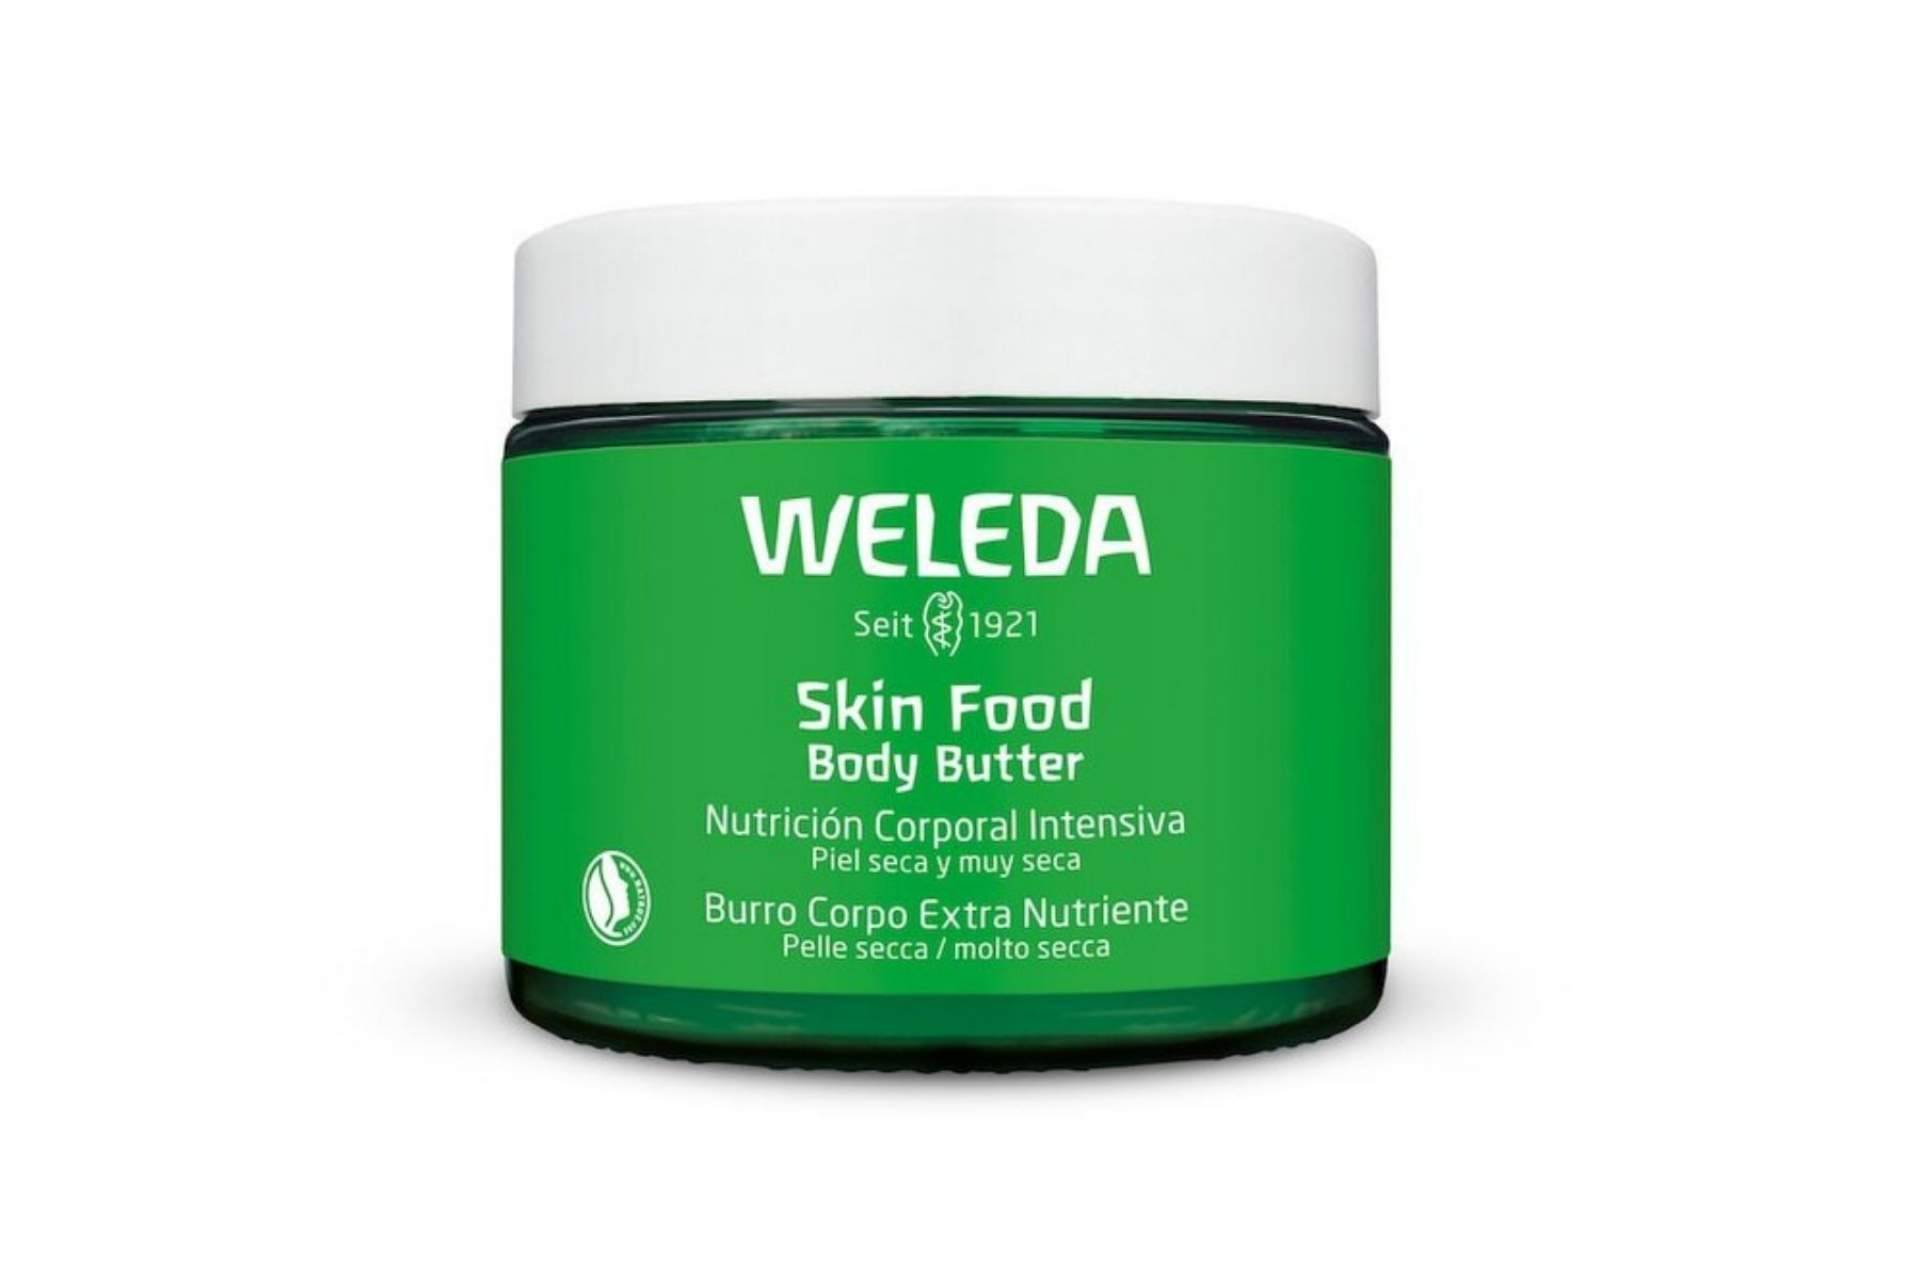 Skin Food Body Butter de Weleda, premiada en los Elle International Beauty Awards 2022